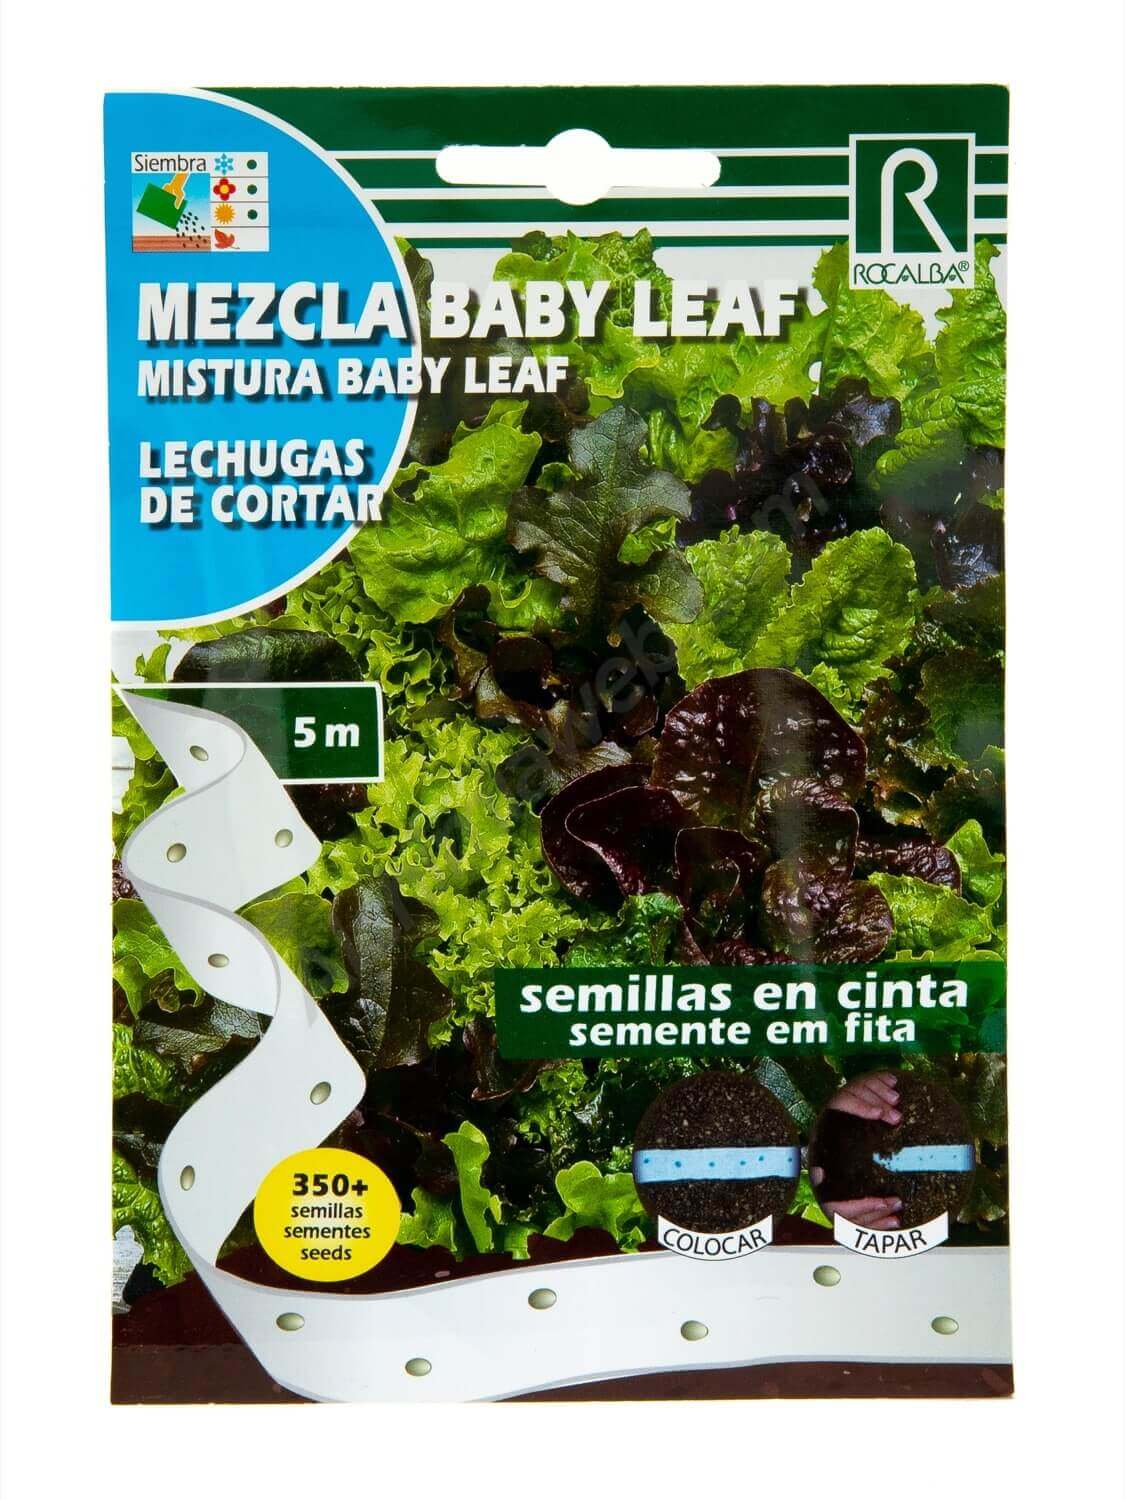 Cont Semillas pre sembradas en cinta lechuga baby leaf 3x167 cm 350 semillas